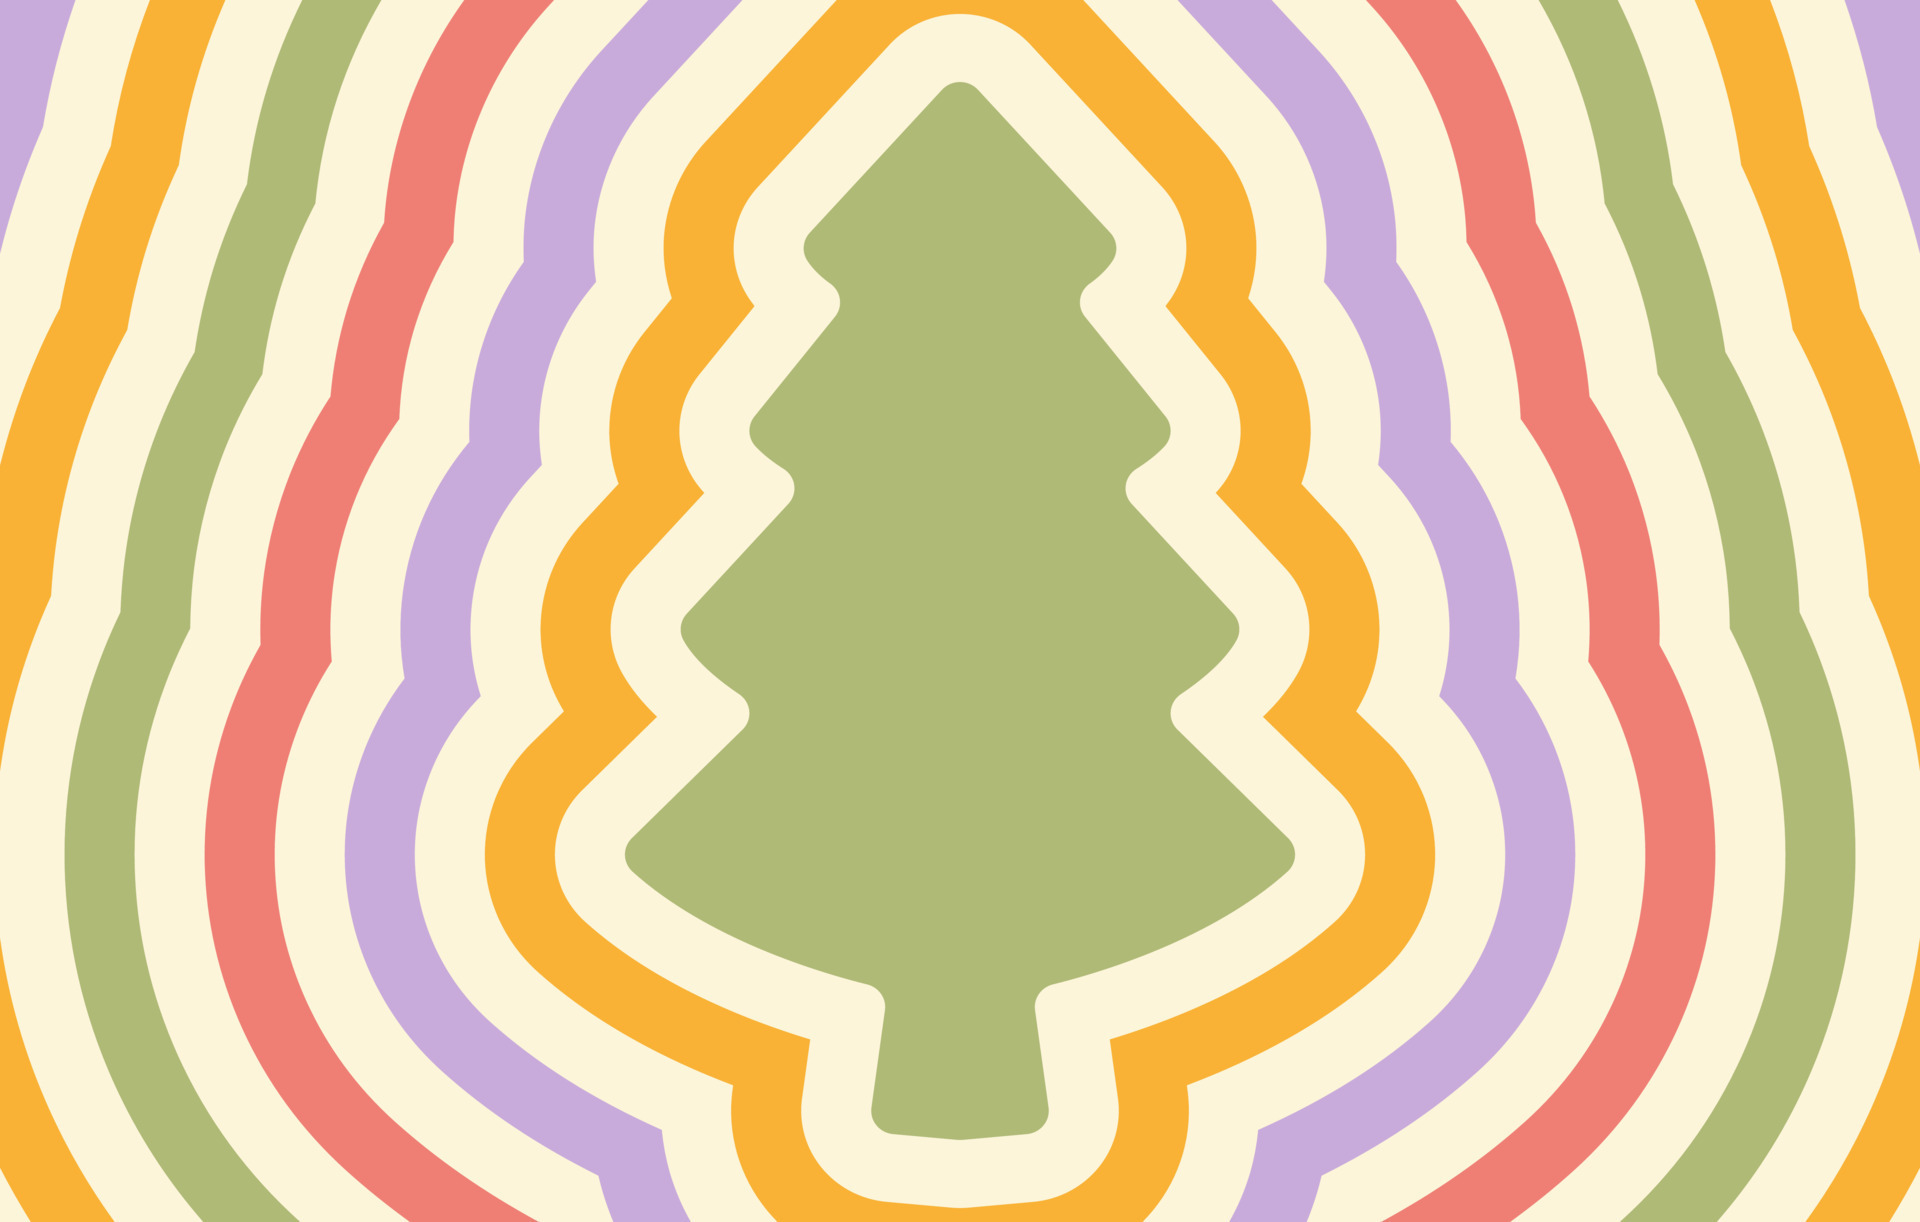 fundo horizontal retrô com árvore de Natal de silhueta de repetição.  estampa hippie de vetor na moda no estilo dos anos 70, 80. Cores pastel  13734651 Vetor no Vecteezy